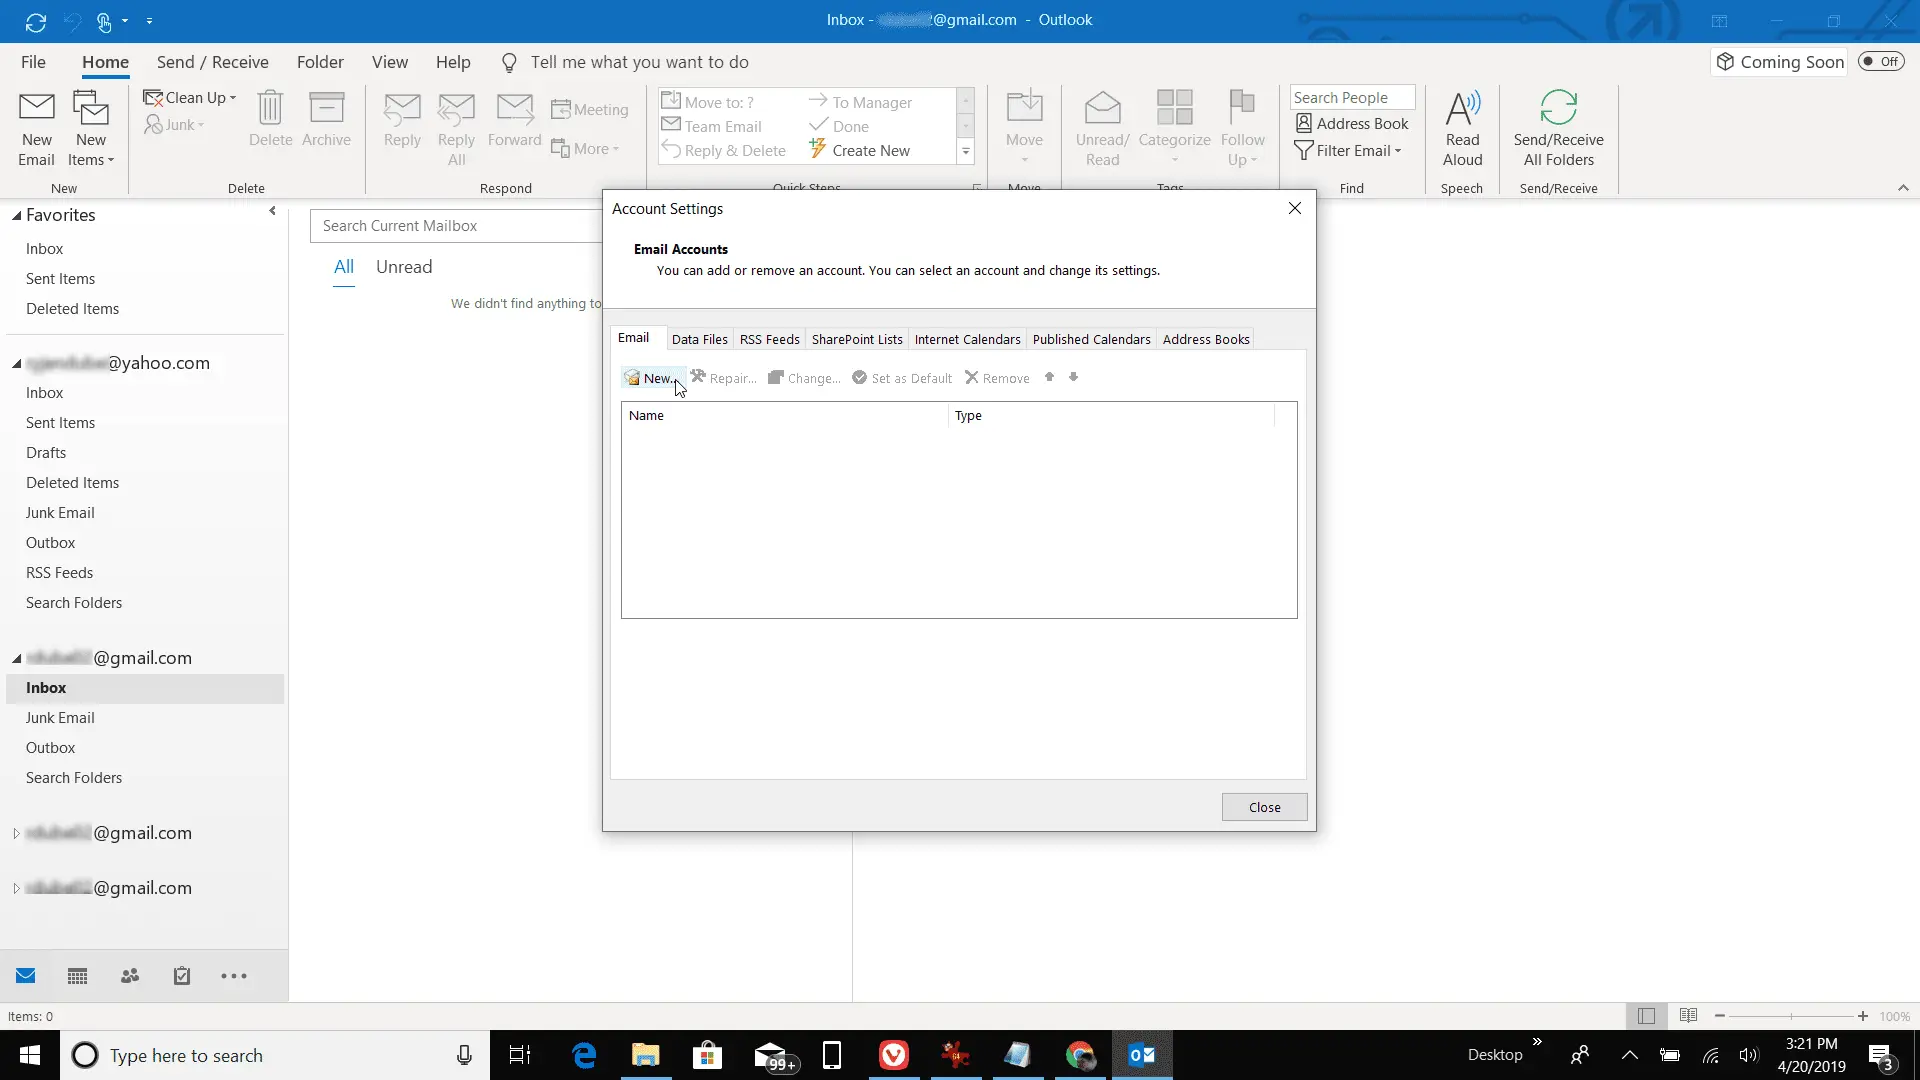 Captura de tela da adição de uma nova conta de e-mail no Outlook